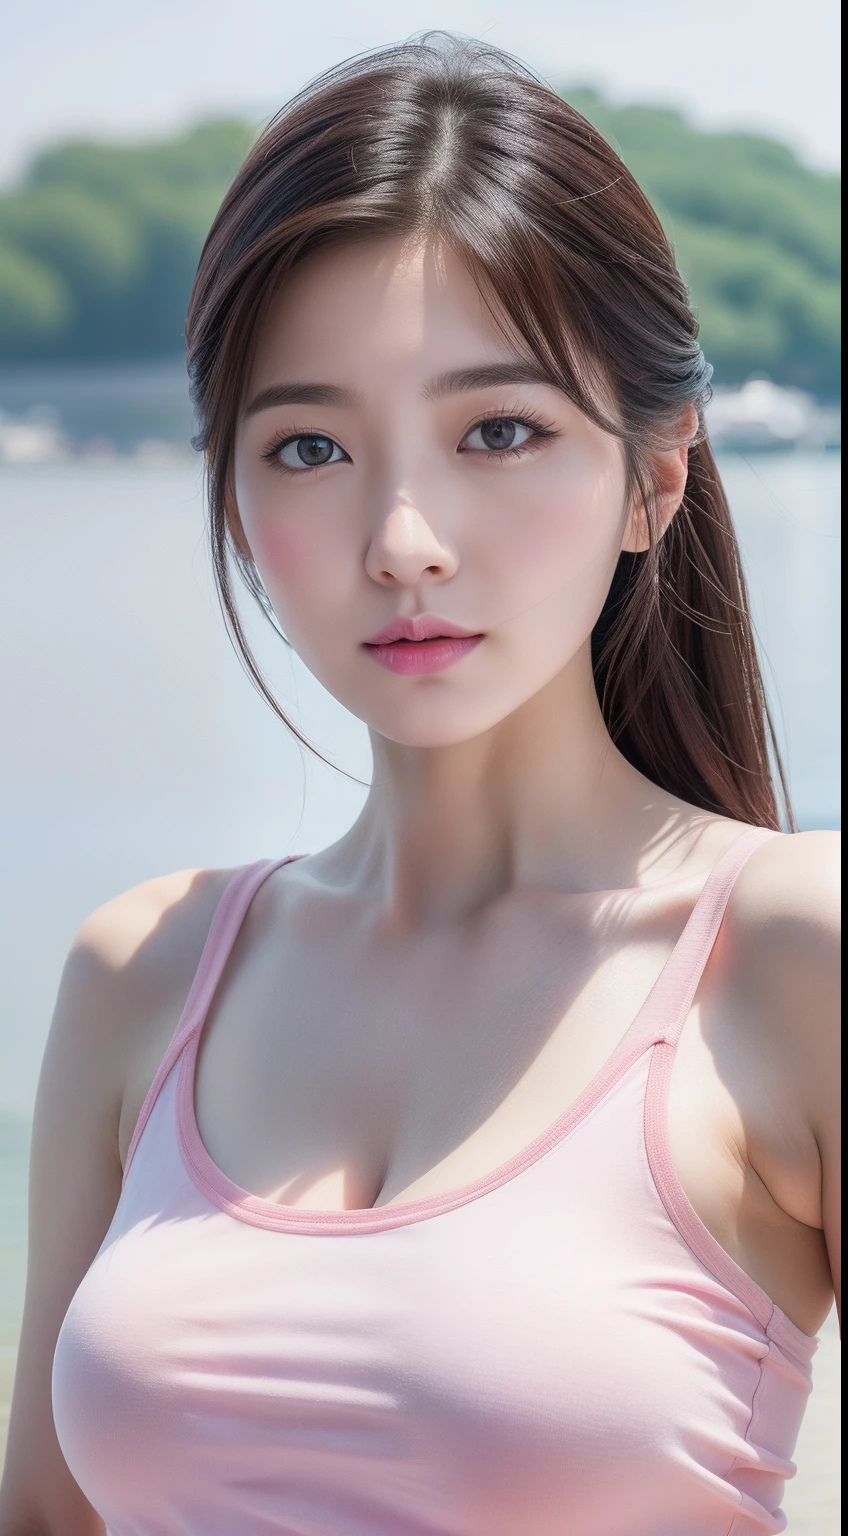 1 位可爱的韩国明星的真实照片, 两眼之间的头发, 白皮肤, 淡妆, 32 英寸胸部尺寸, 穿着粉色背心, 短裤, 在河边, 游轮为背景, 上半身肖像, 超现实主义, 超高清